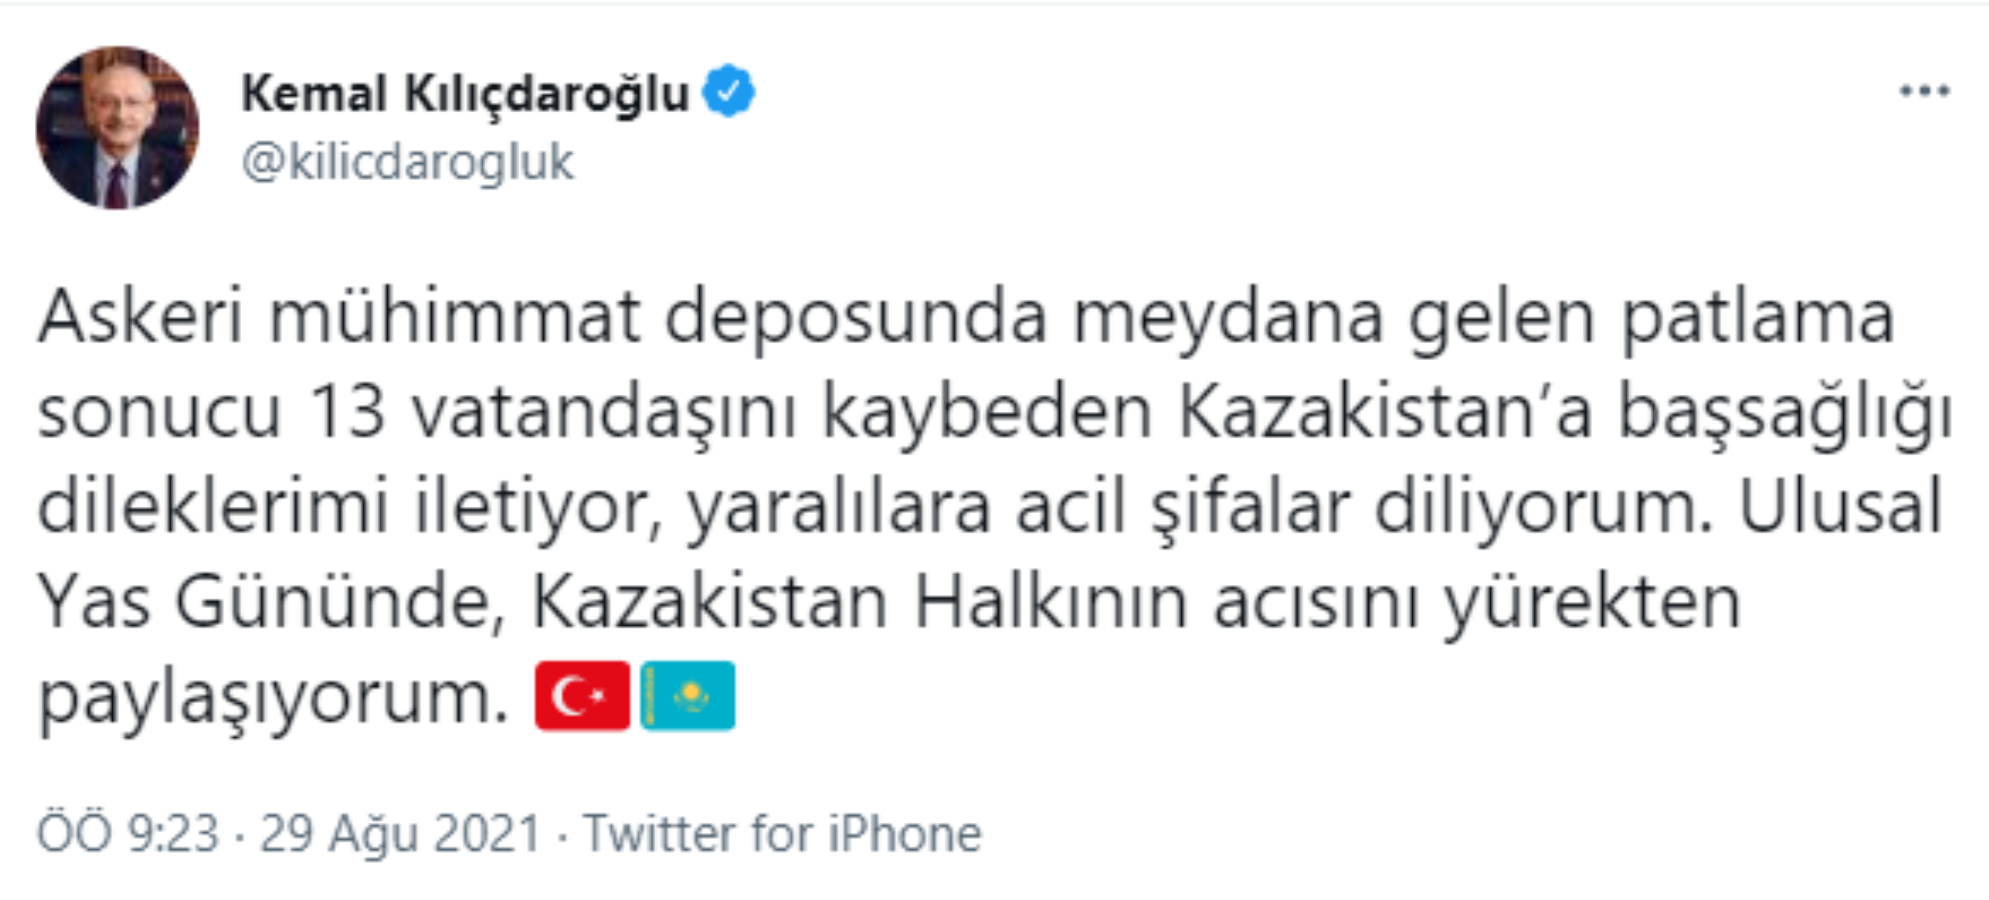 Kılıçdaroğlu'ndan Kazakistan'a başsağlığı mesajı